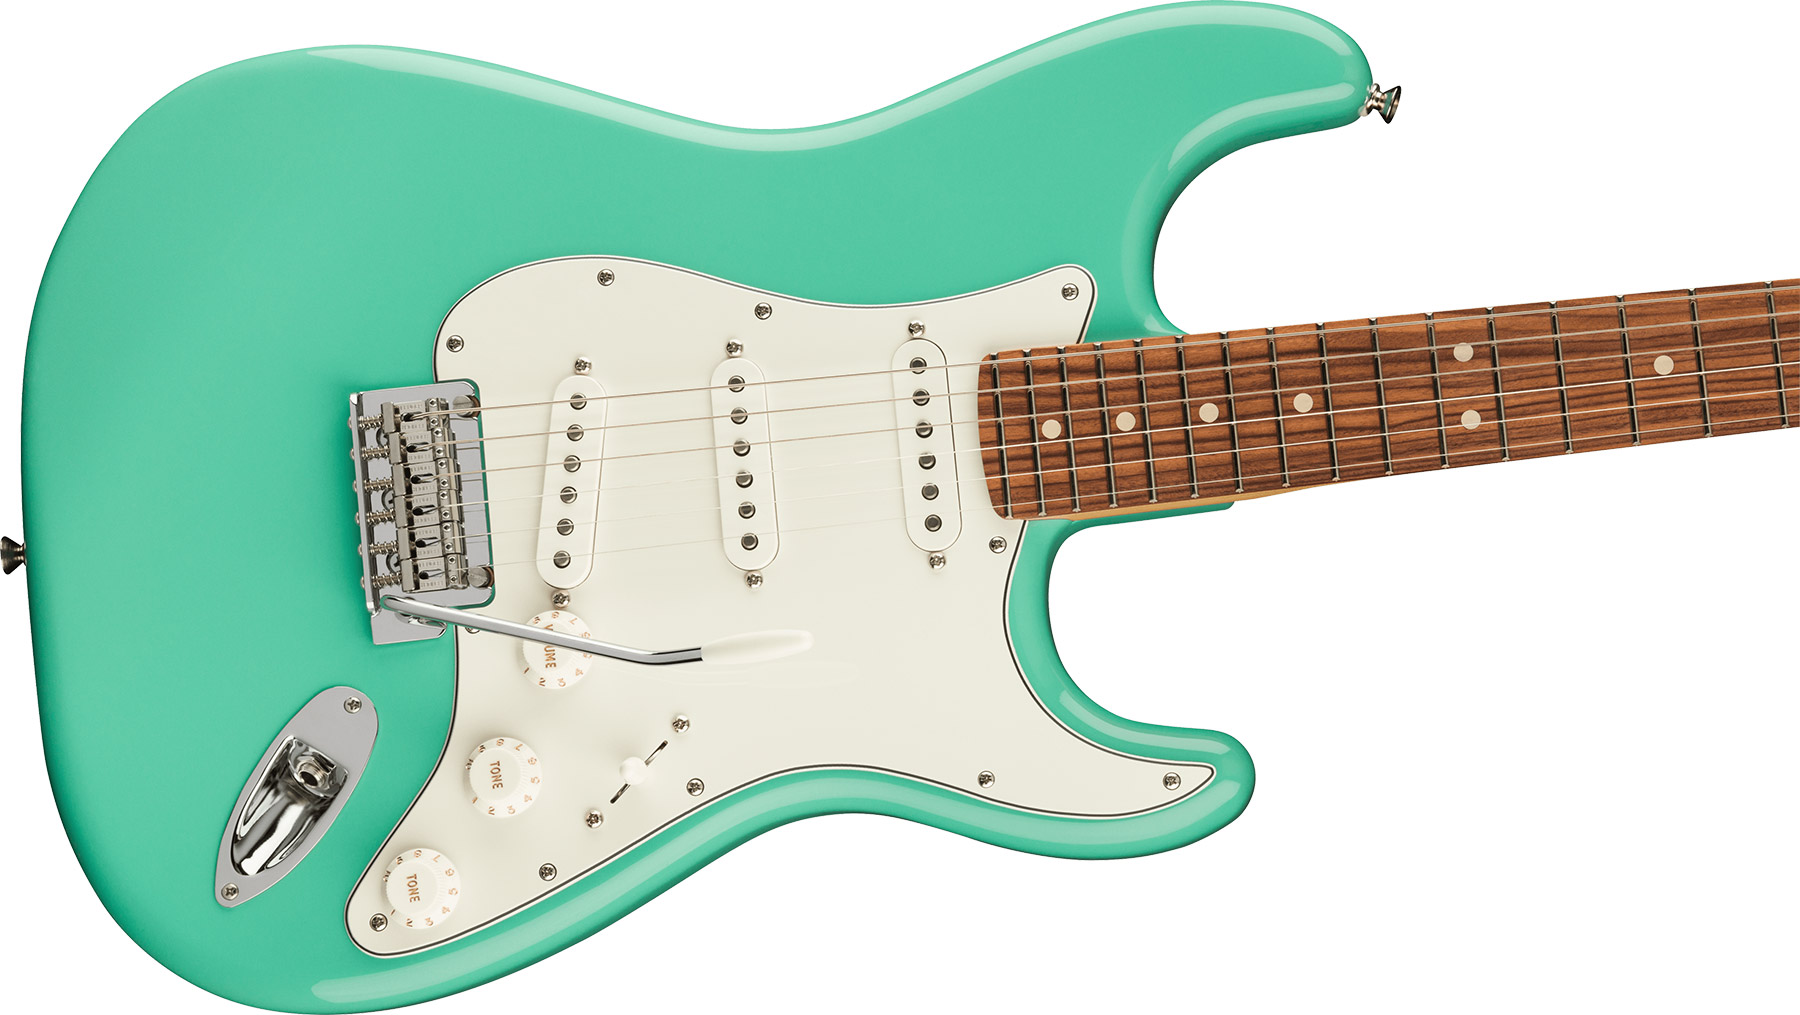 Fender Strat Player Mex 2023 3s Trem Pf - Seafoam Green - Elektrische gitaar in Str-vorm - Variation 2